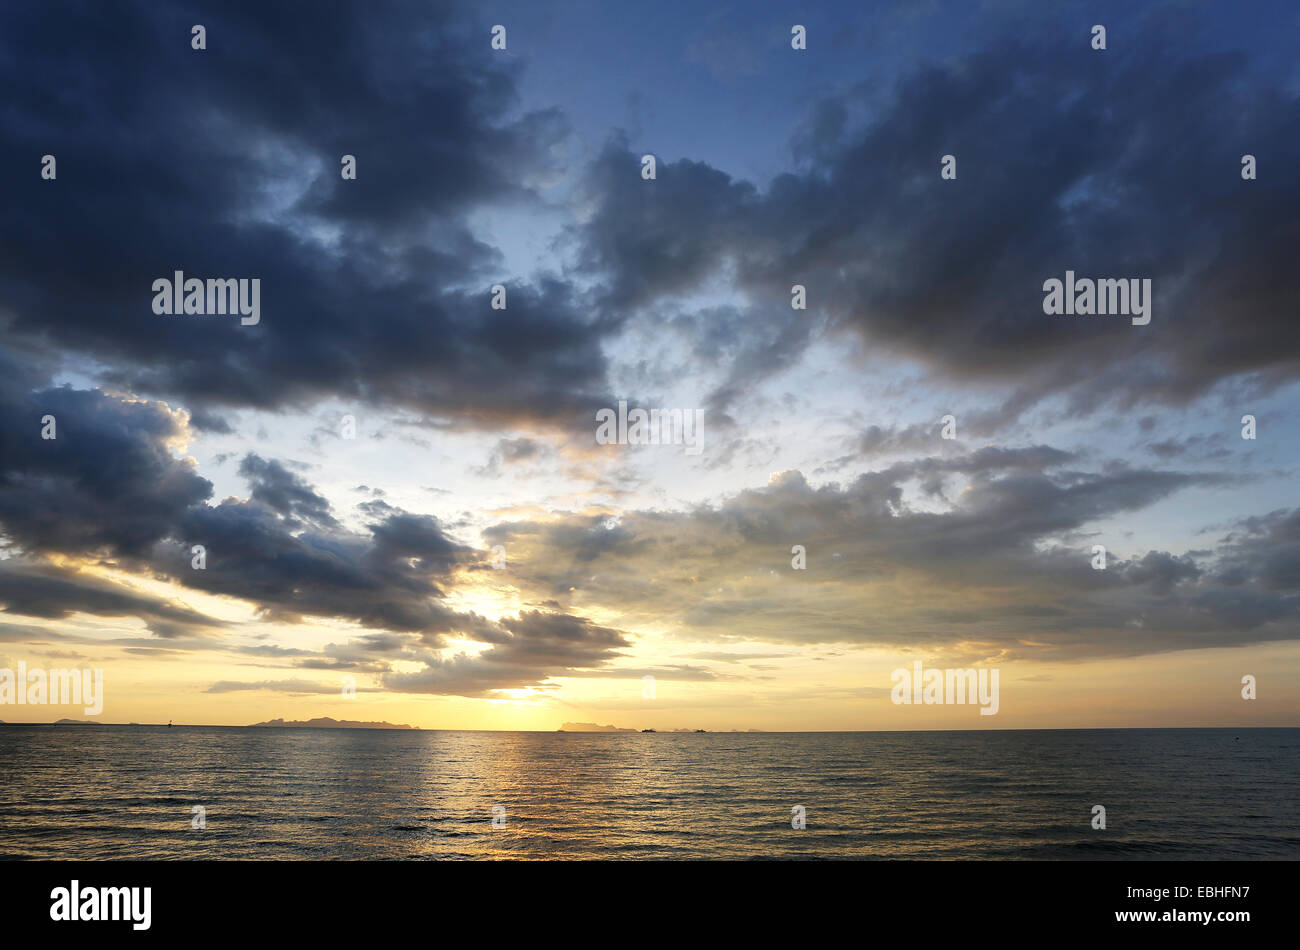 Sunset on the sea in Thailand on Koh Samui Stock Photo